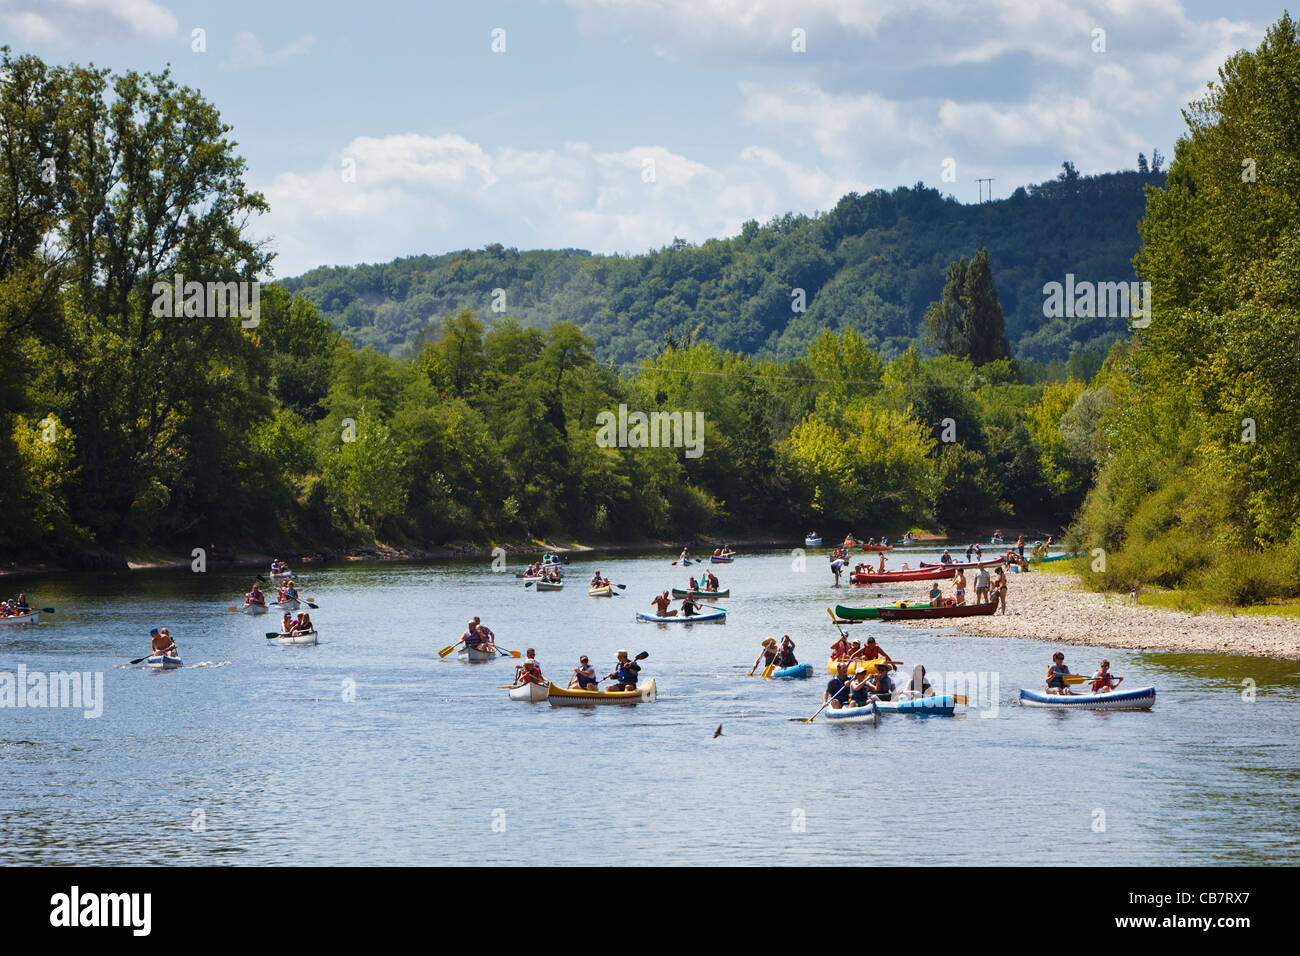 Canoeing on the Dordogne river, Dordogne, France in summer Stock Photo